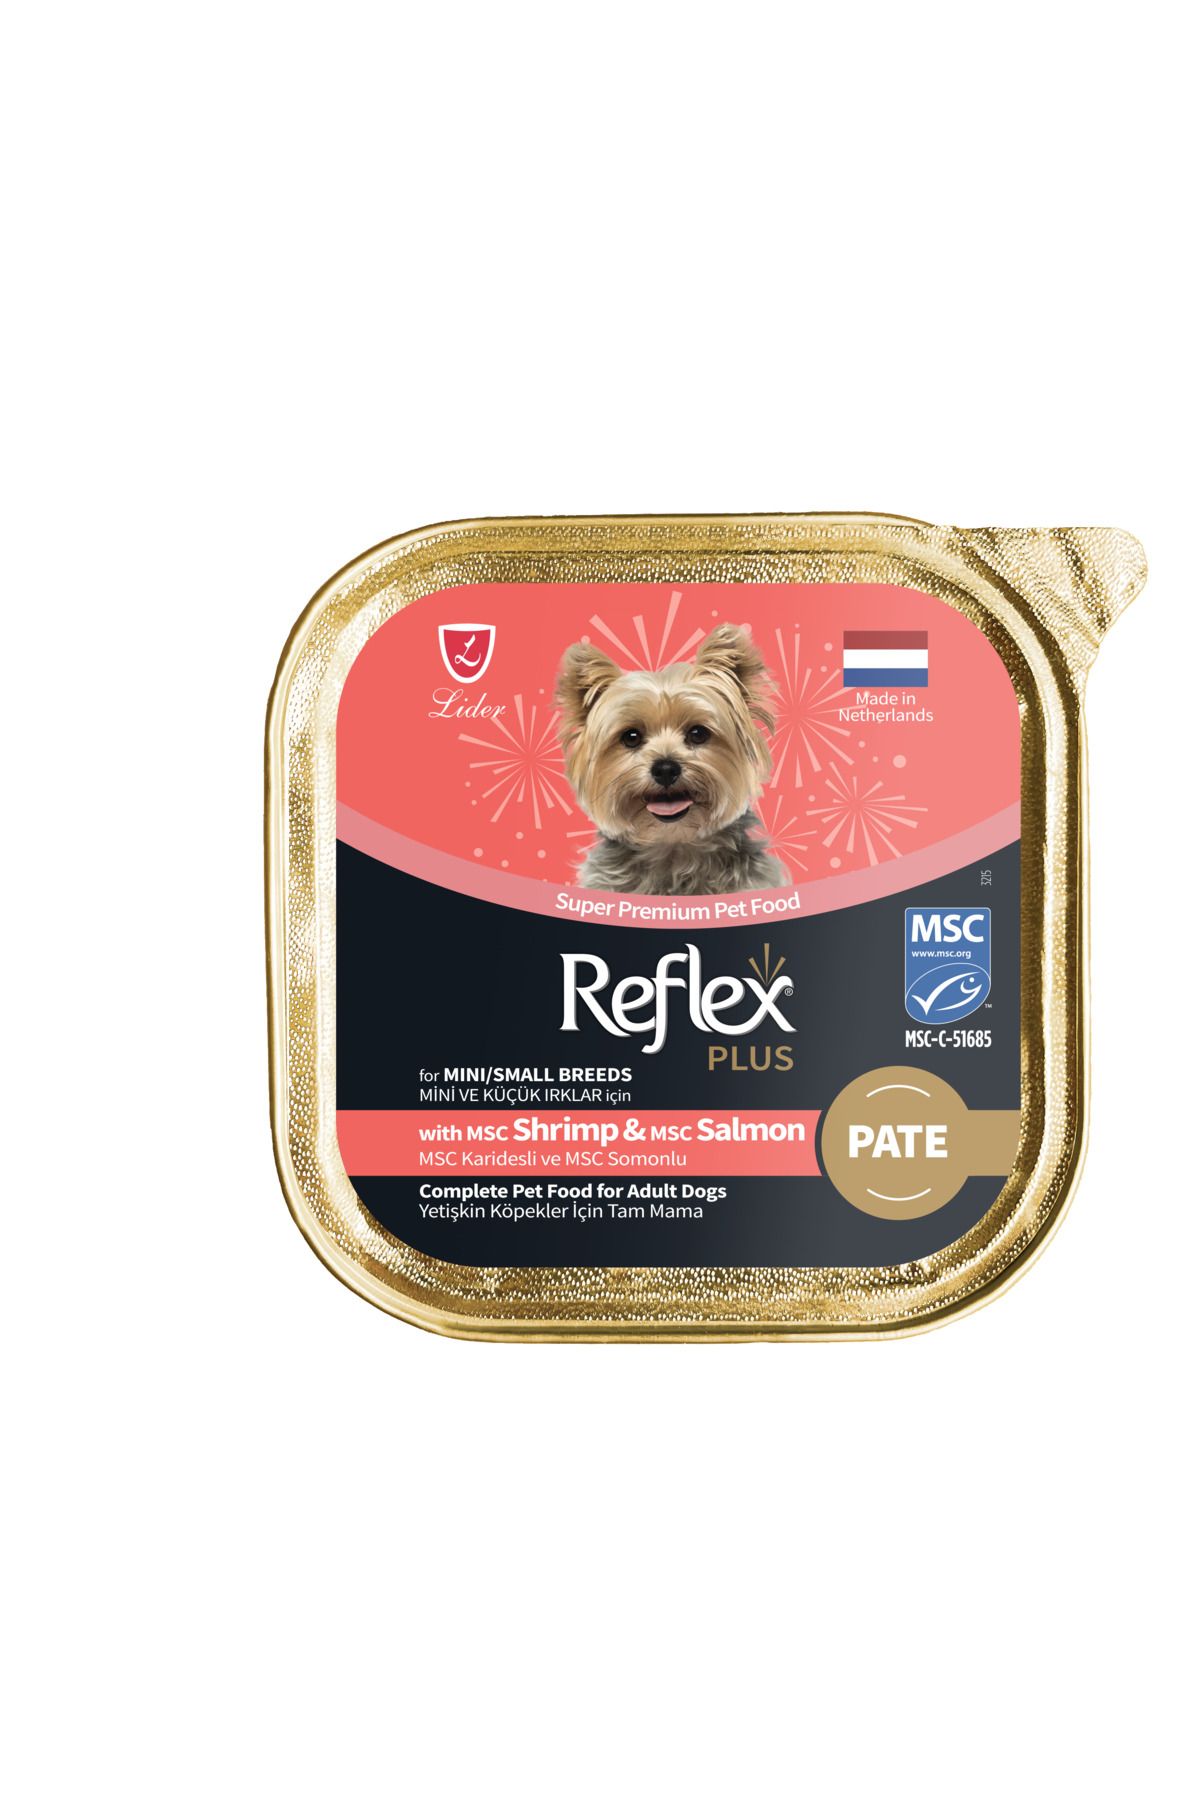 Reflex Plus Alu Tray 85 gr Karides ve Somonlu Pate Kıyılmış Küçük ırk köpek için Yaş mama